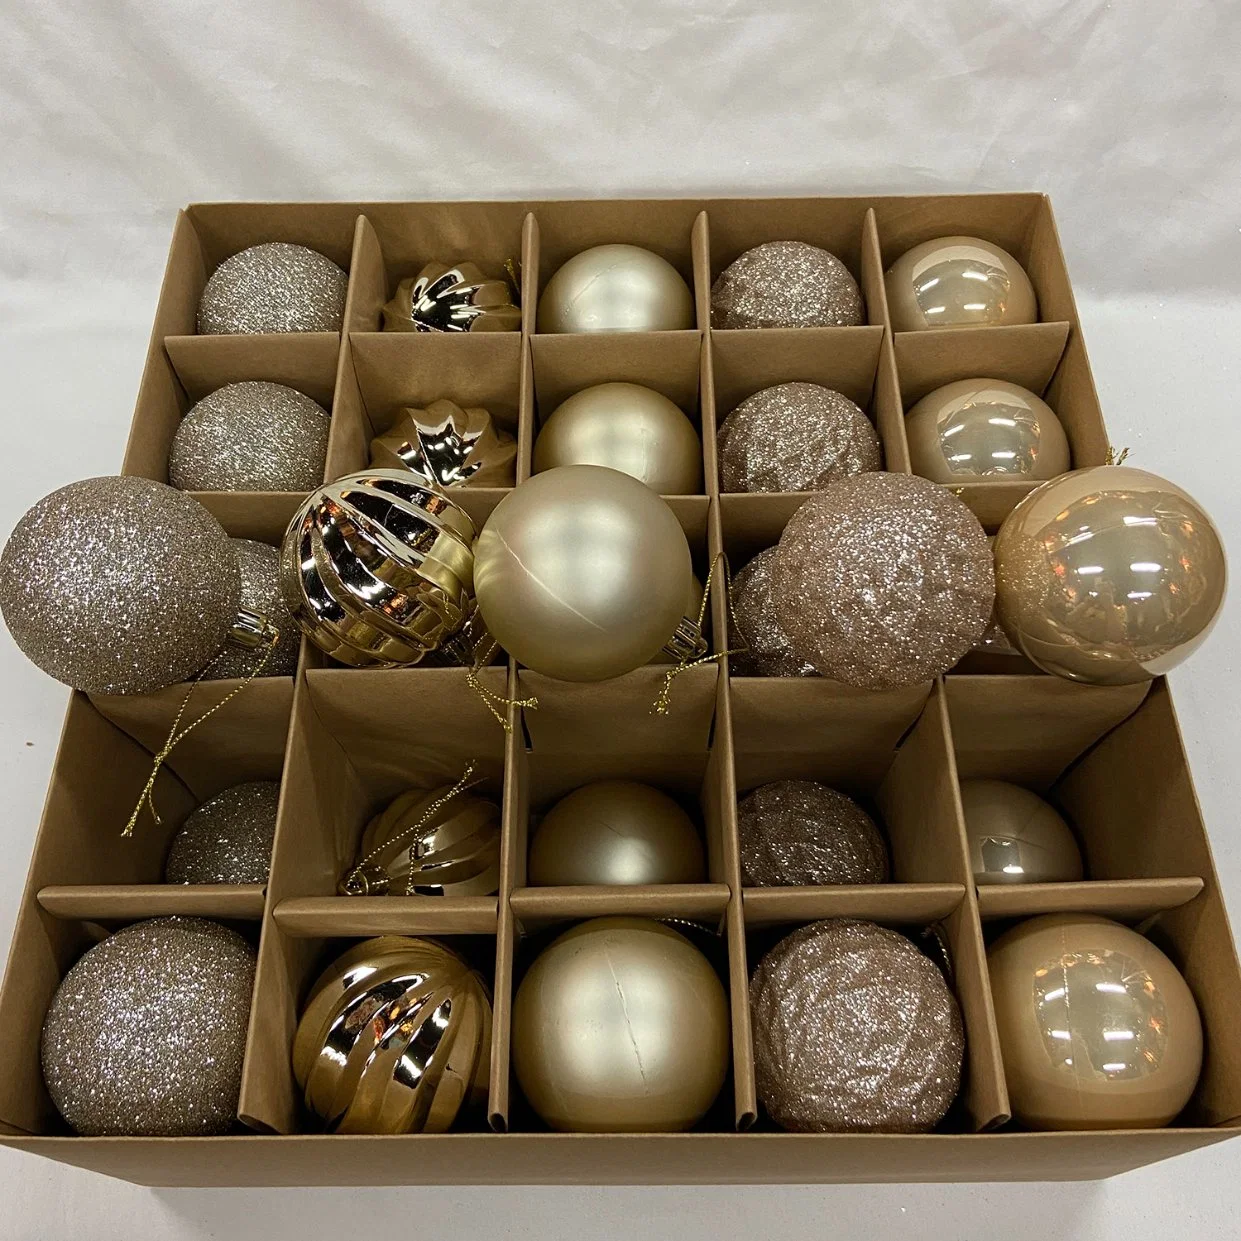 2,36 pouces 30PCS Ensembles de boules de Noël en plastique incassables avec floquage Matt Light Glitter Bauble Ornament Hanging Tree Decor